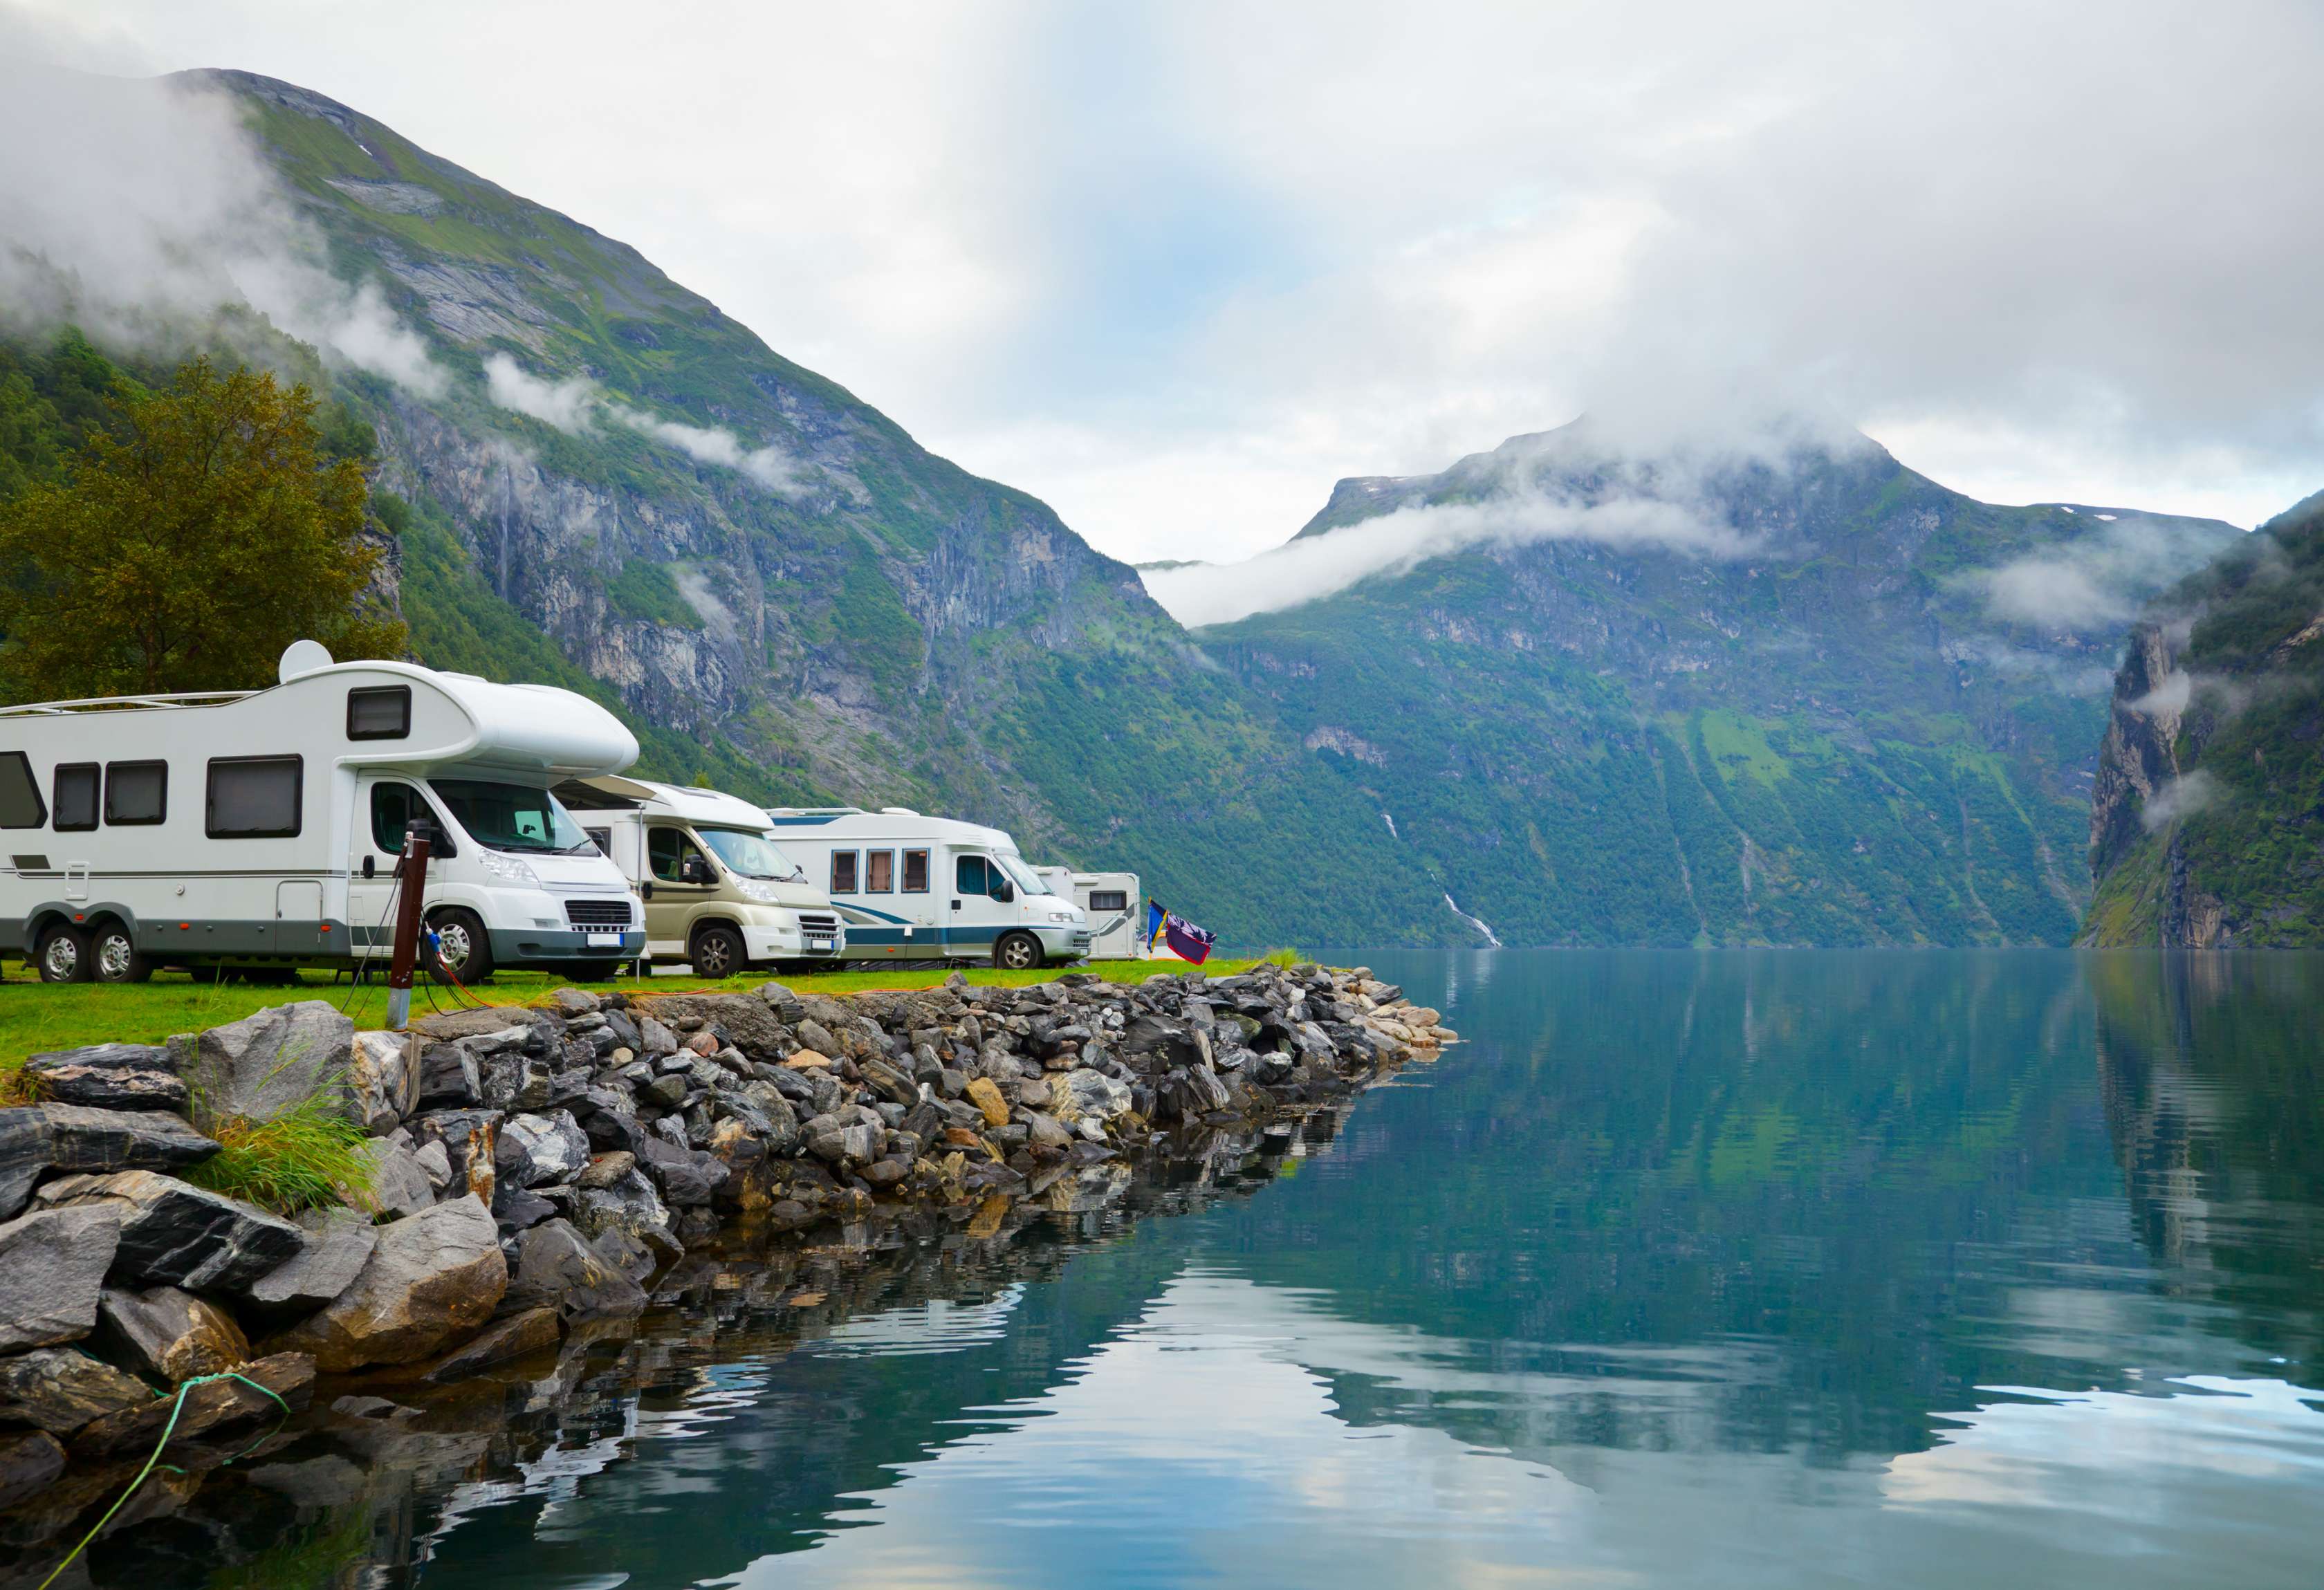 Allianz - Wohnmobil Steuern: Mehrere Wohnmobile parken am Ufer eines Bergsees